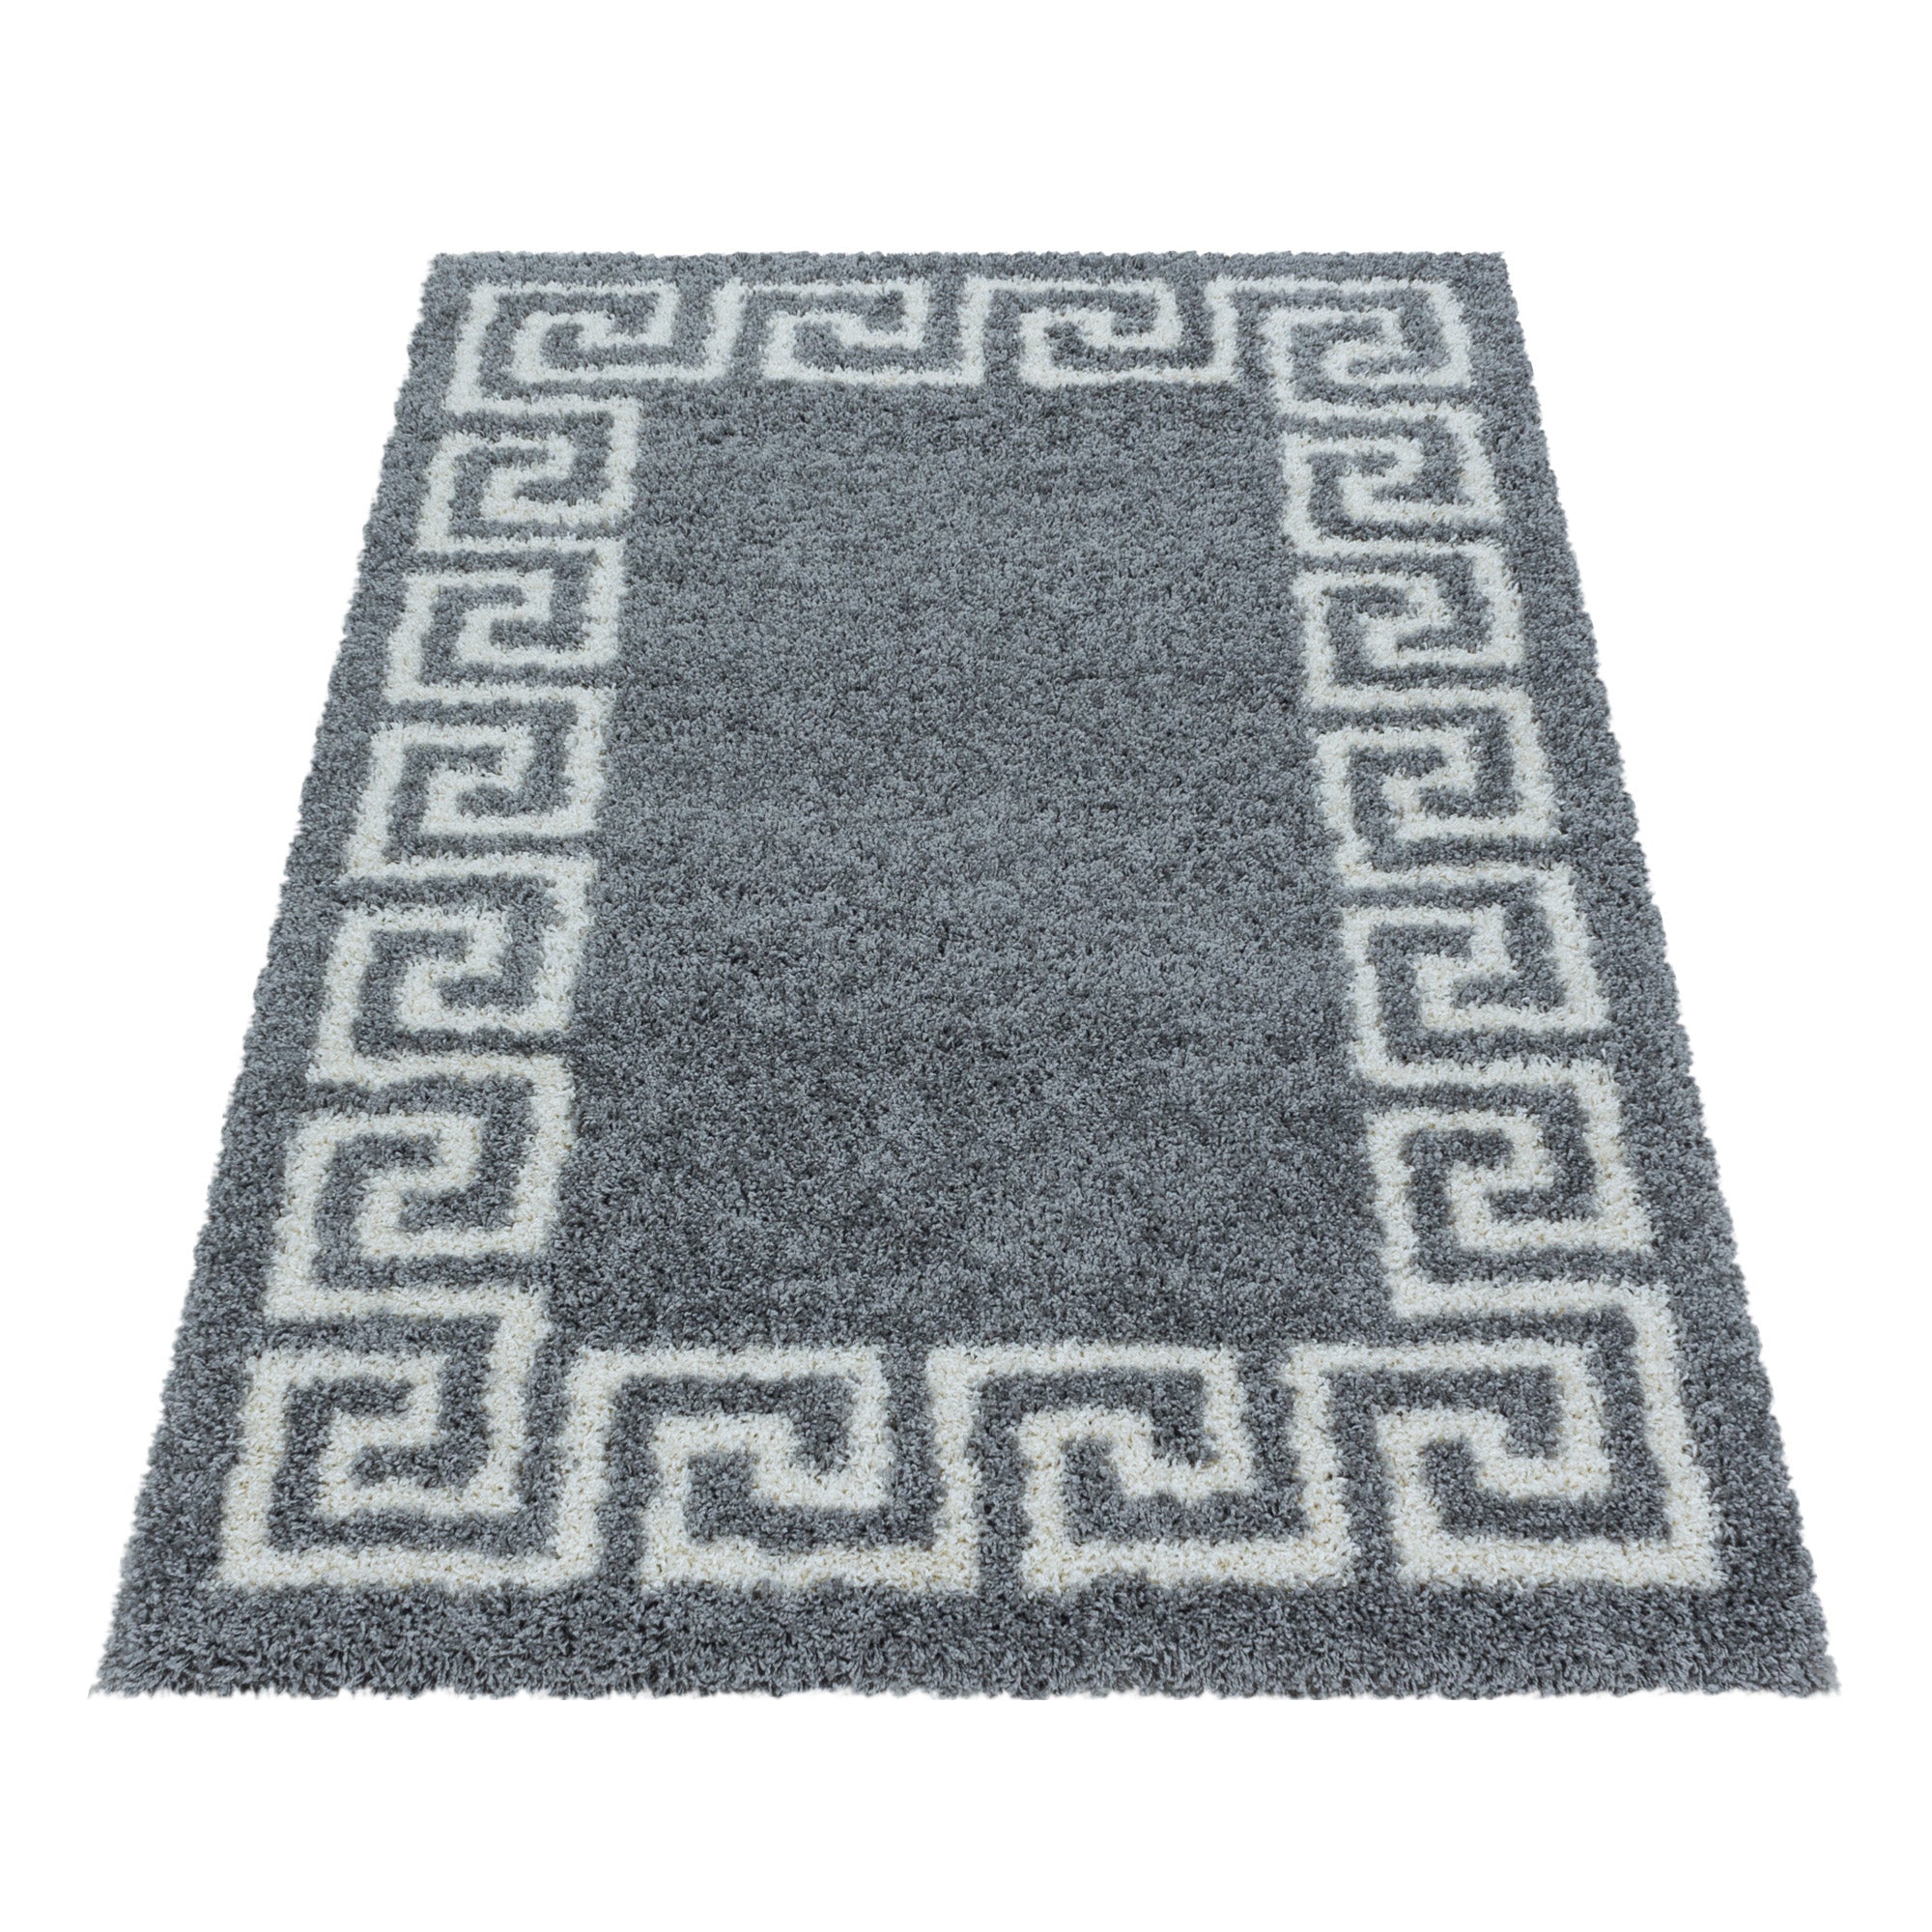 Design Hochflor Teppich Wohnzimmerteppich Muster Antike Bordüre Farbe Grau